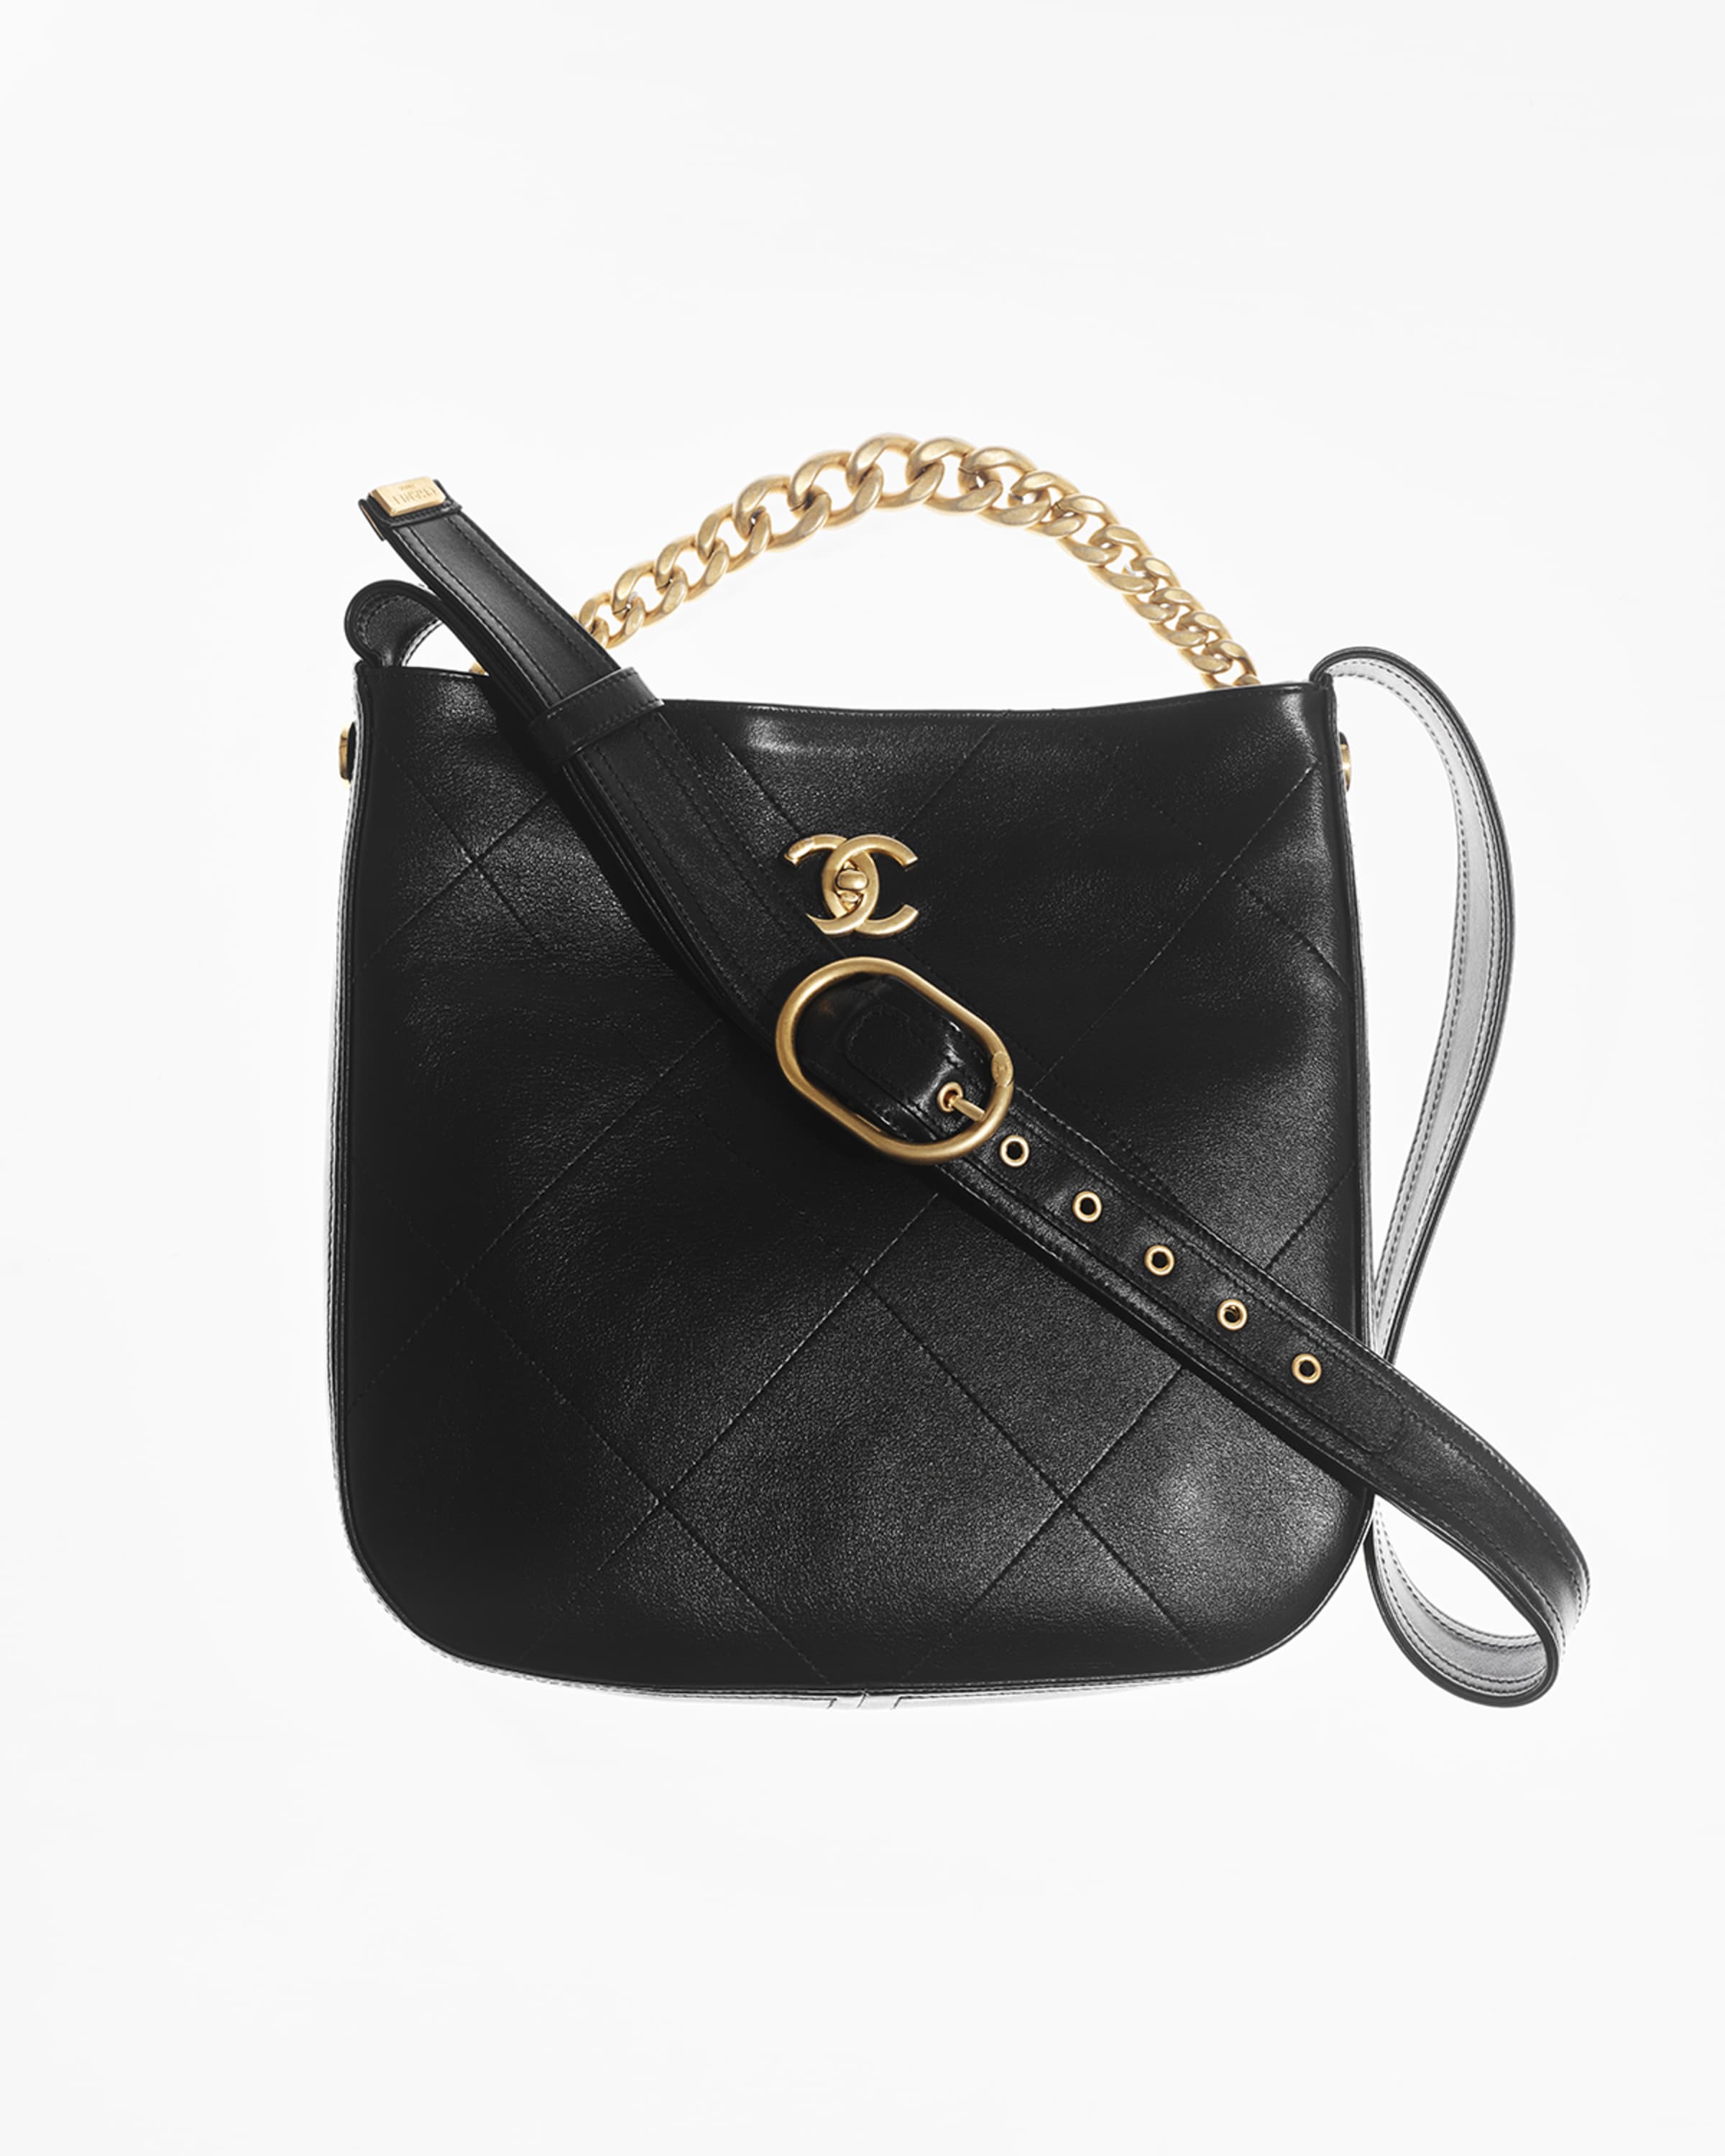 Chanel 2018 Button Up Large Hobo - Black Hobos, Handbags